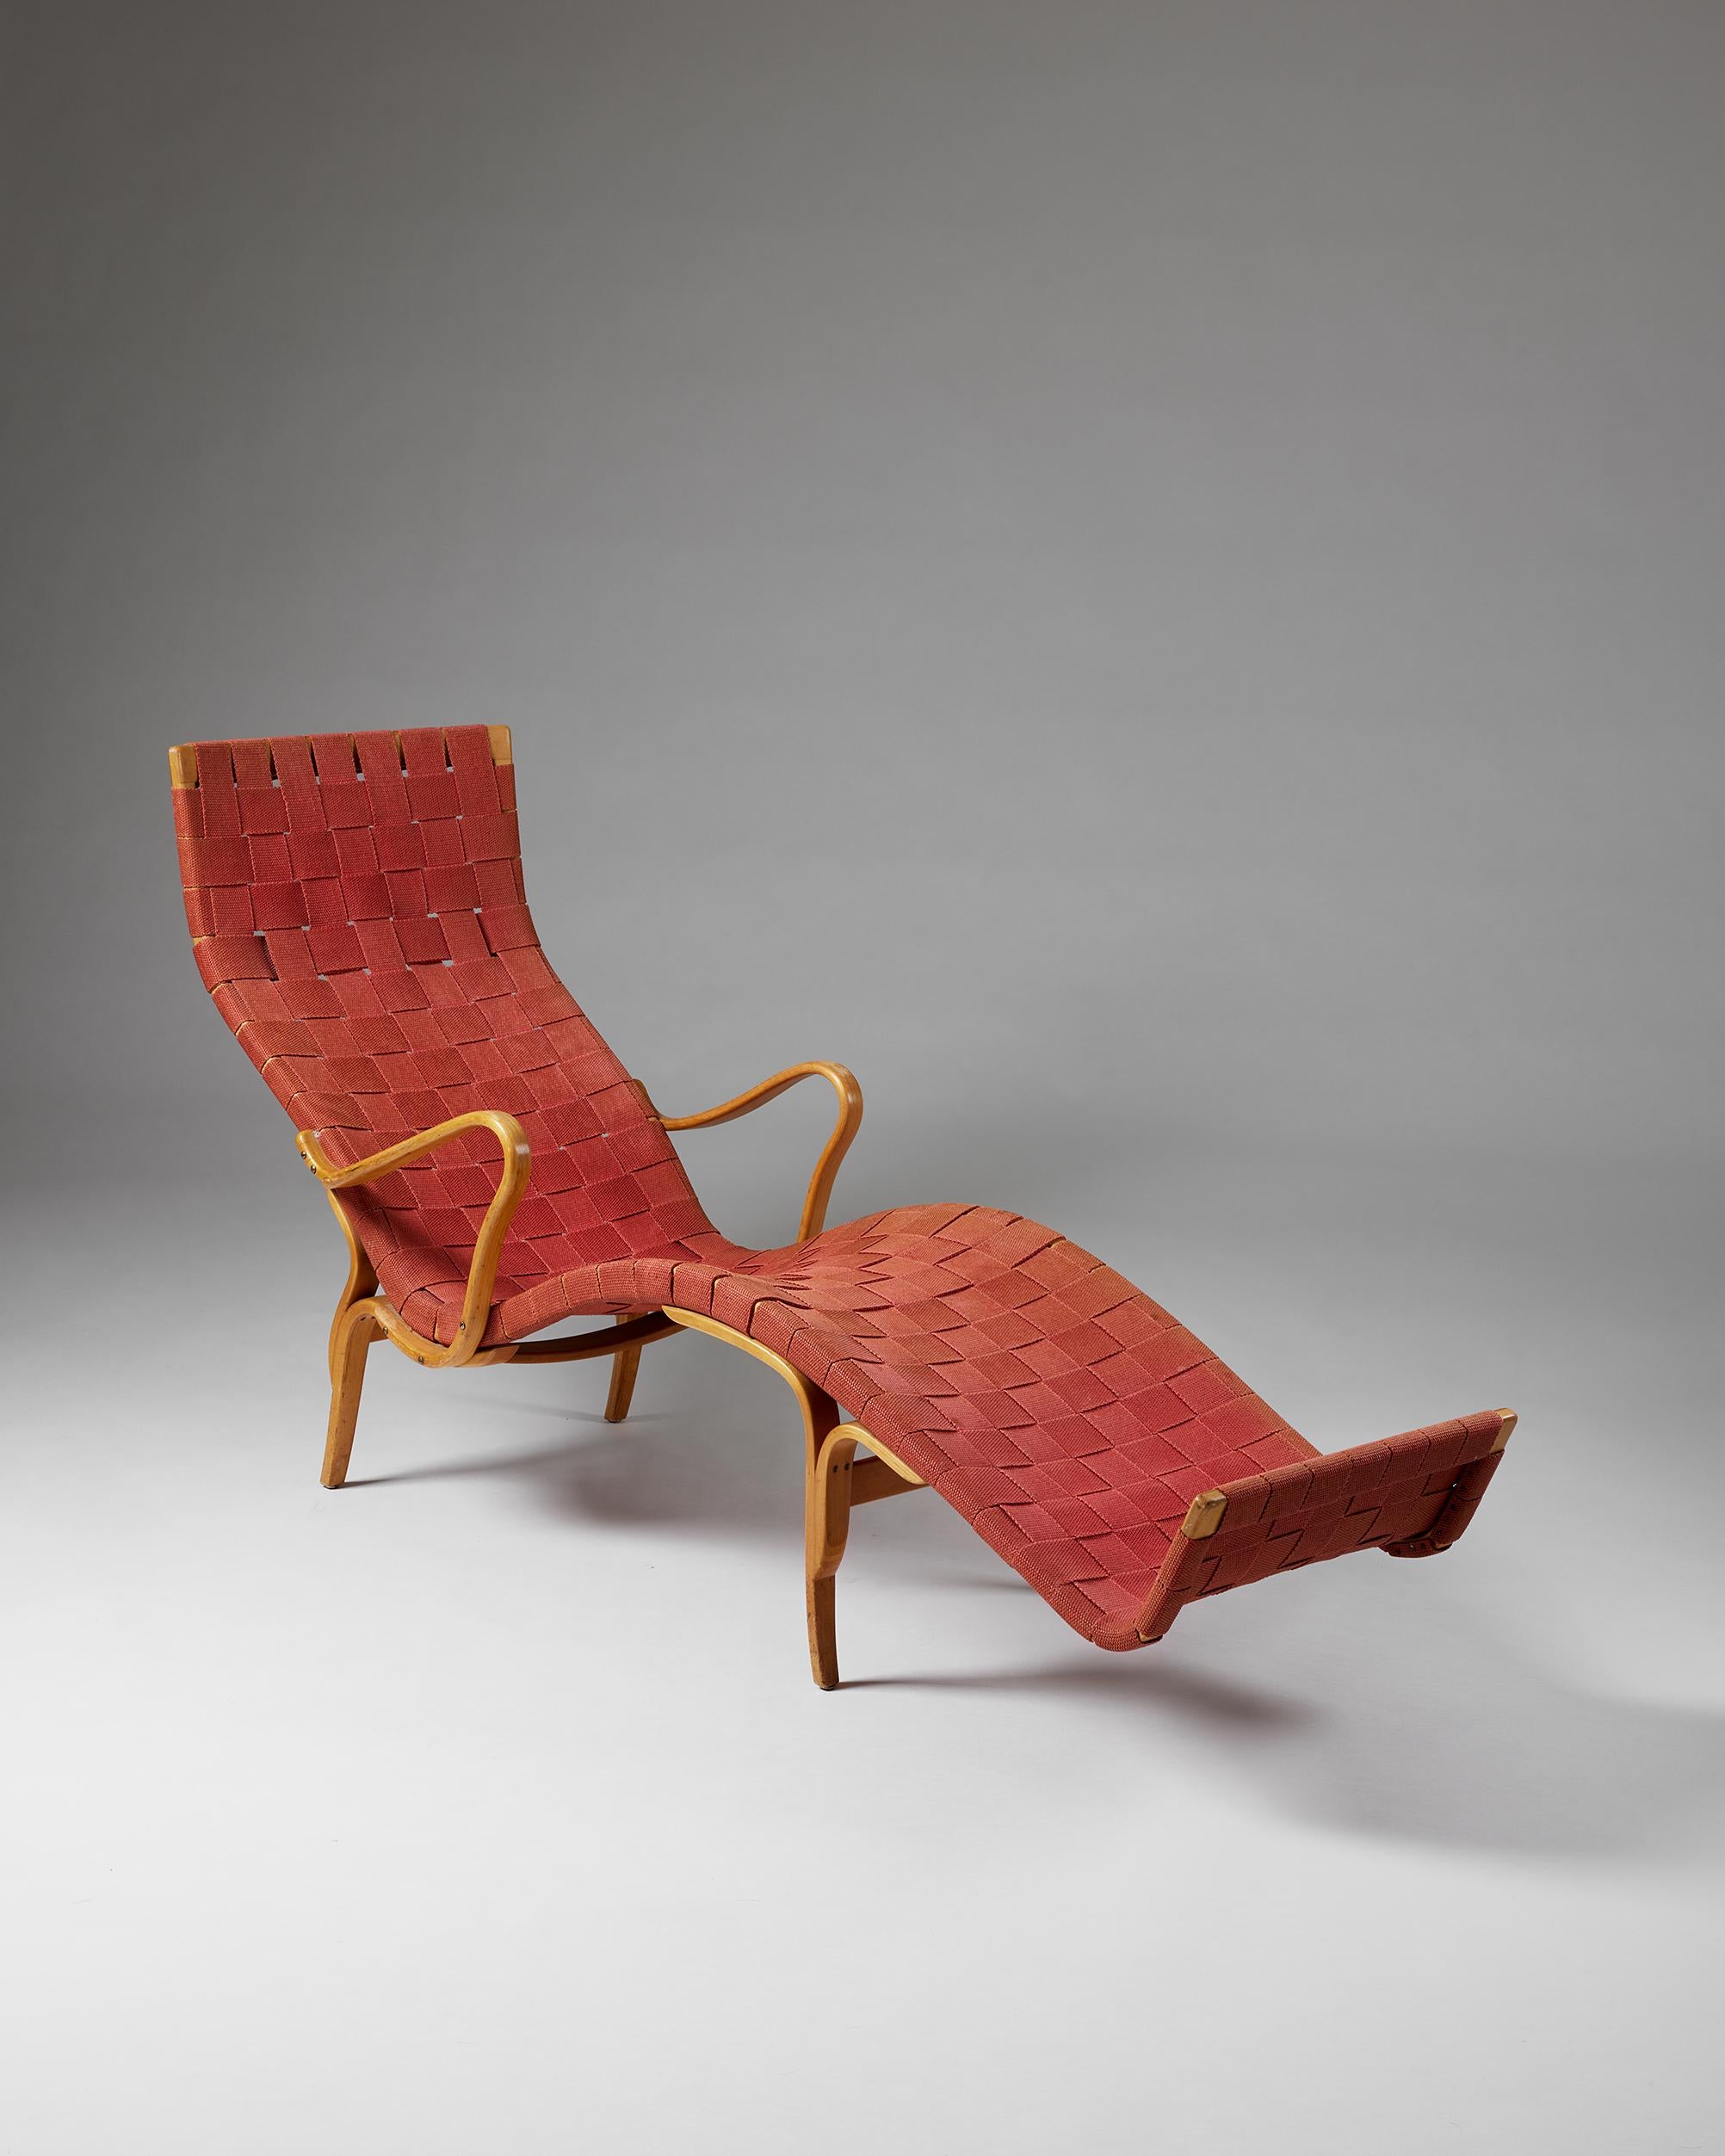 Loungesessel 'Pernilla 3', entworfen von Bruno Mathsson für Karl Mathsson,
Schweden, 1946 - 1947.

Laminiertes Birkenholz und Textil.

Gestempelt.

Provenienz: Dieser Stuhl, der speziell von einem Kunden bestellt wurde, um sich seiner